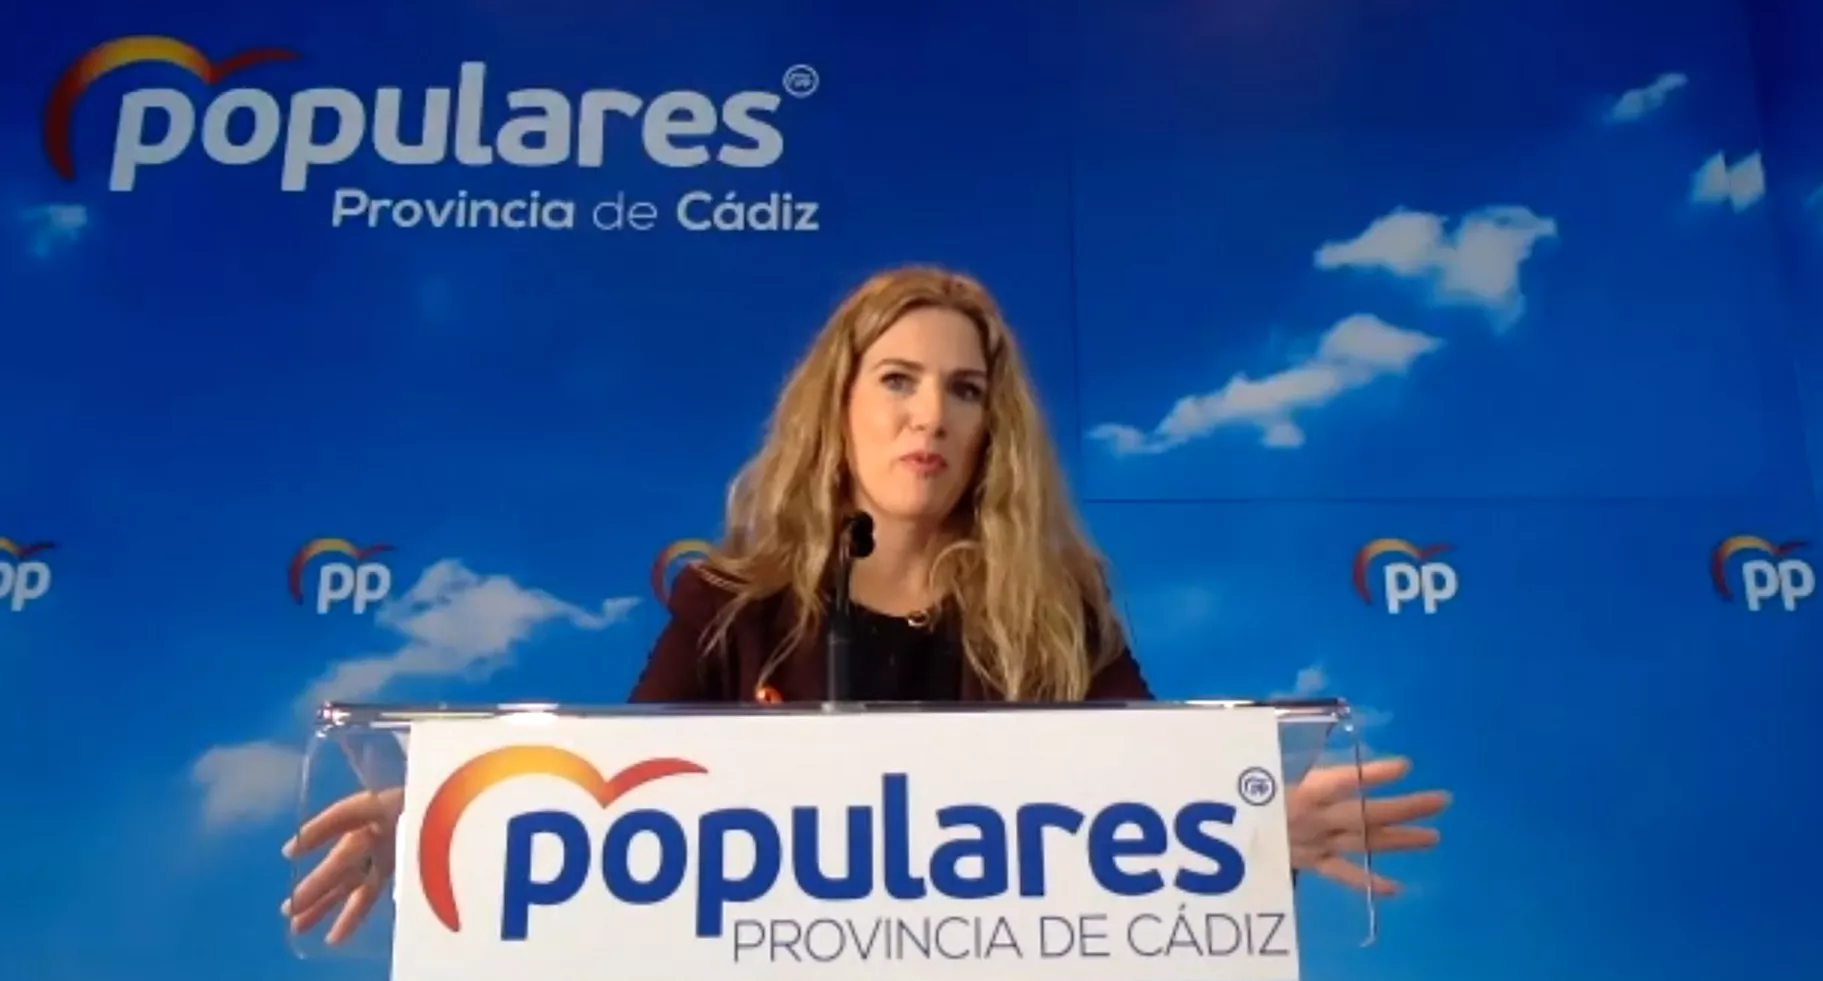 El PP presentará 30 enmiendas a los PGE en el Congreso por valor de 118 millones de euros en inversiones para la provincia de Cádiz